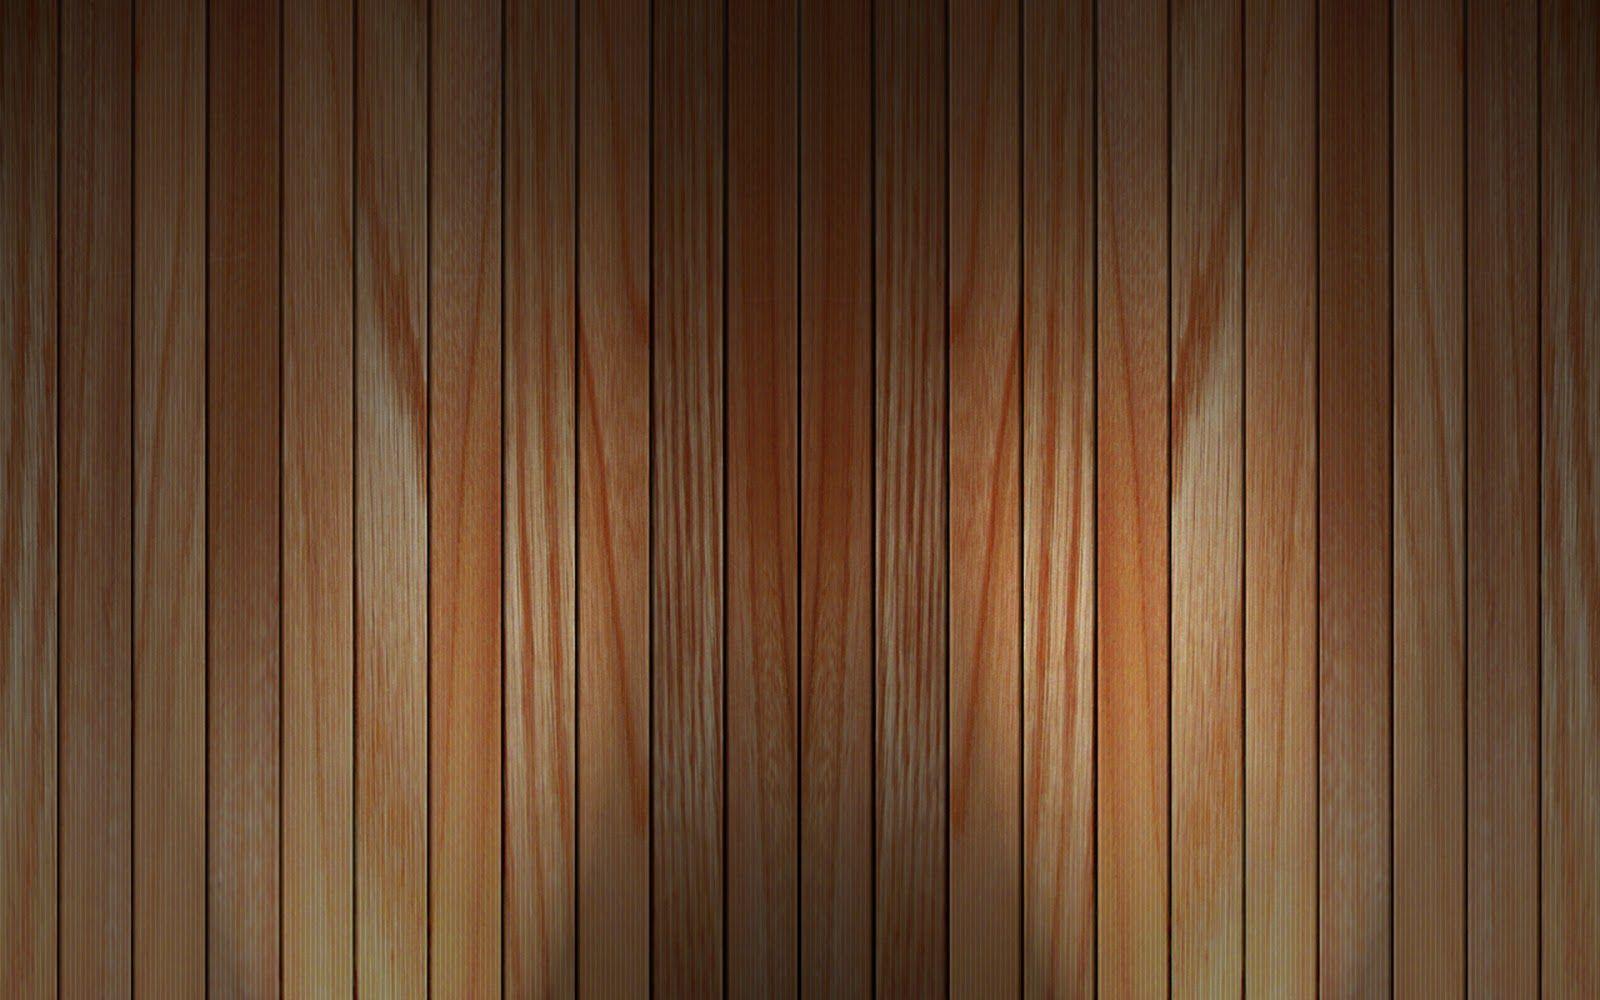 Hình nền tường gỗ: Hình nền tường gỗ sẽ giúp cho máy tính của bạn trở nên ấn tượng hơn với phong cách trang trí nhẹ nhàng nhưng không kém phần tinh tế. Một lựa chọn hoàn hảo cho những ai yêu thích sự đơn giản và tinh tế.